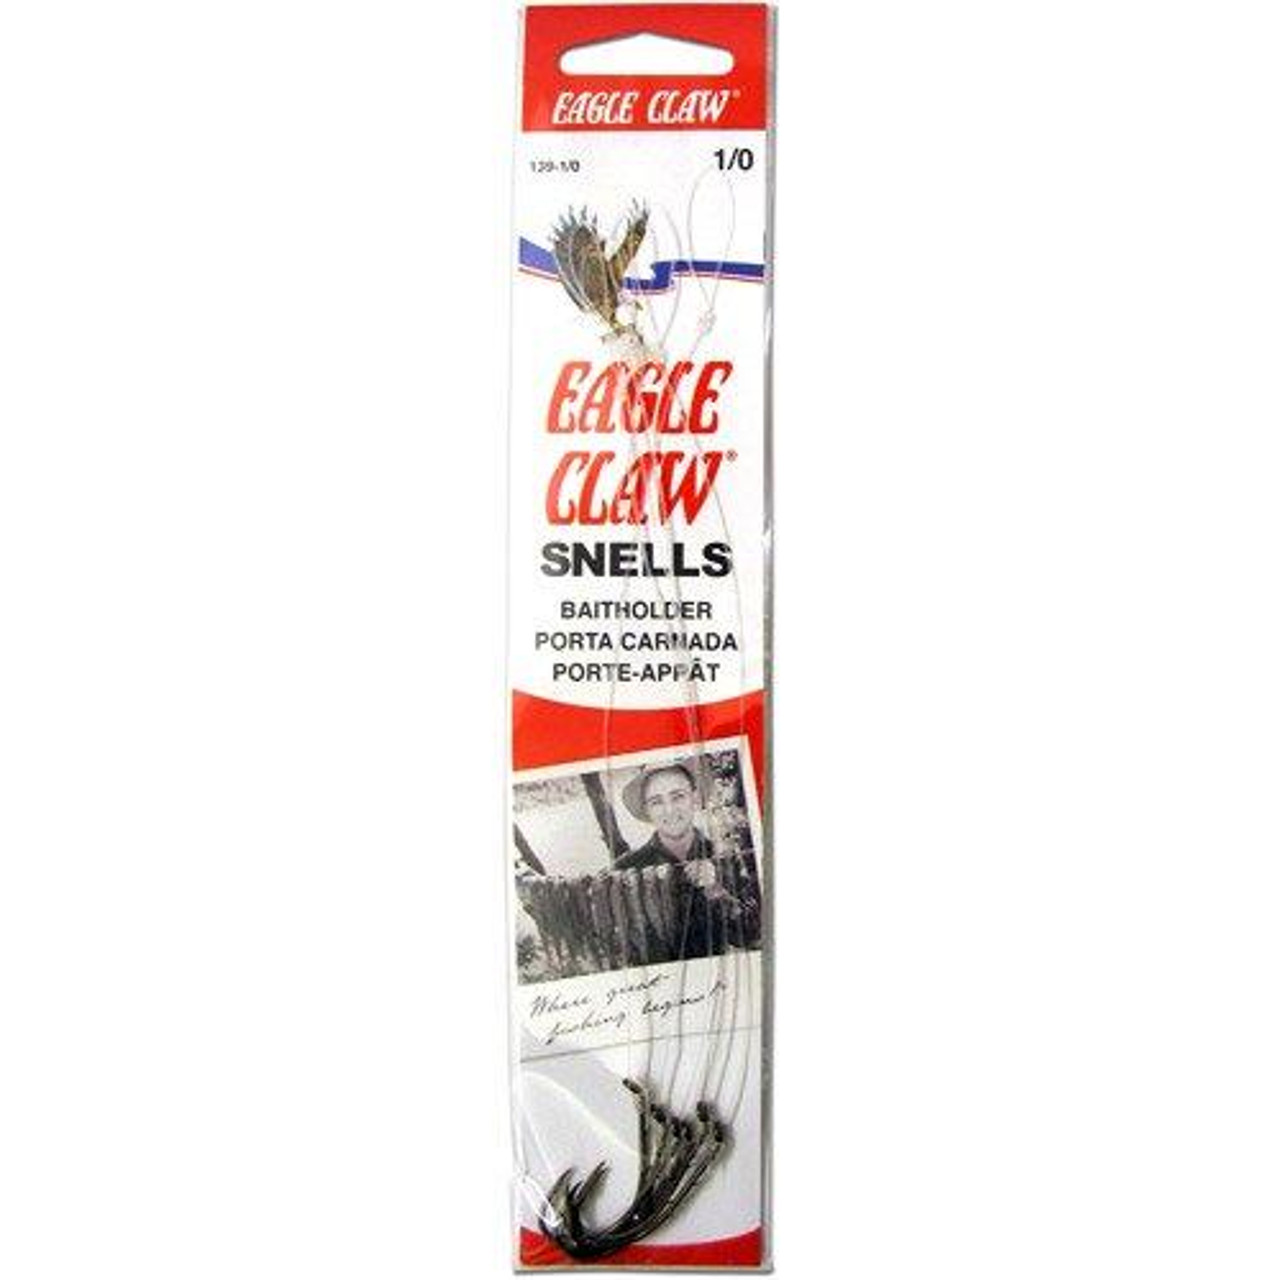 Eagle Claw Lazer Sharp 9135 Nylawire Baitholder Snelled Hooks - 1/0